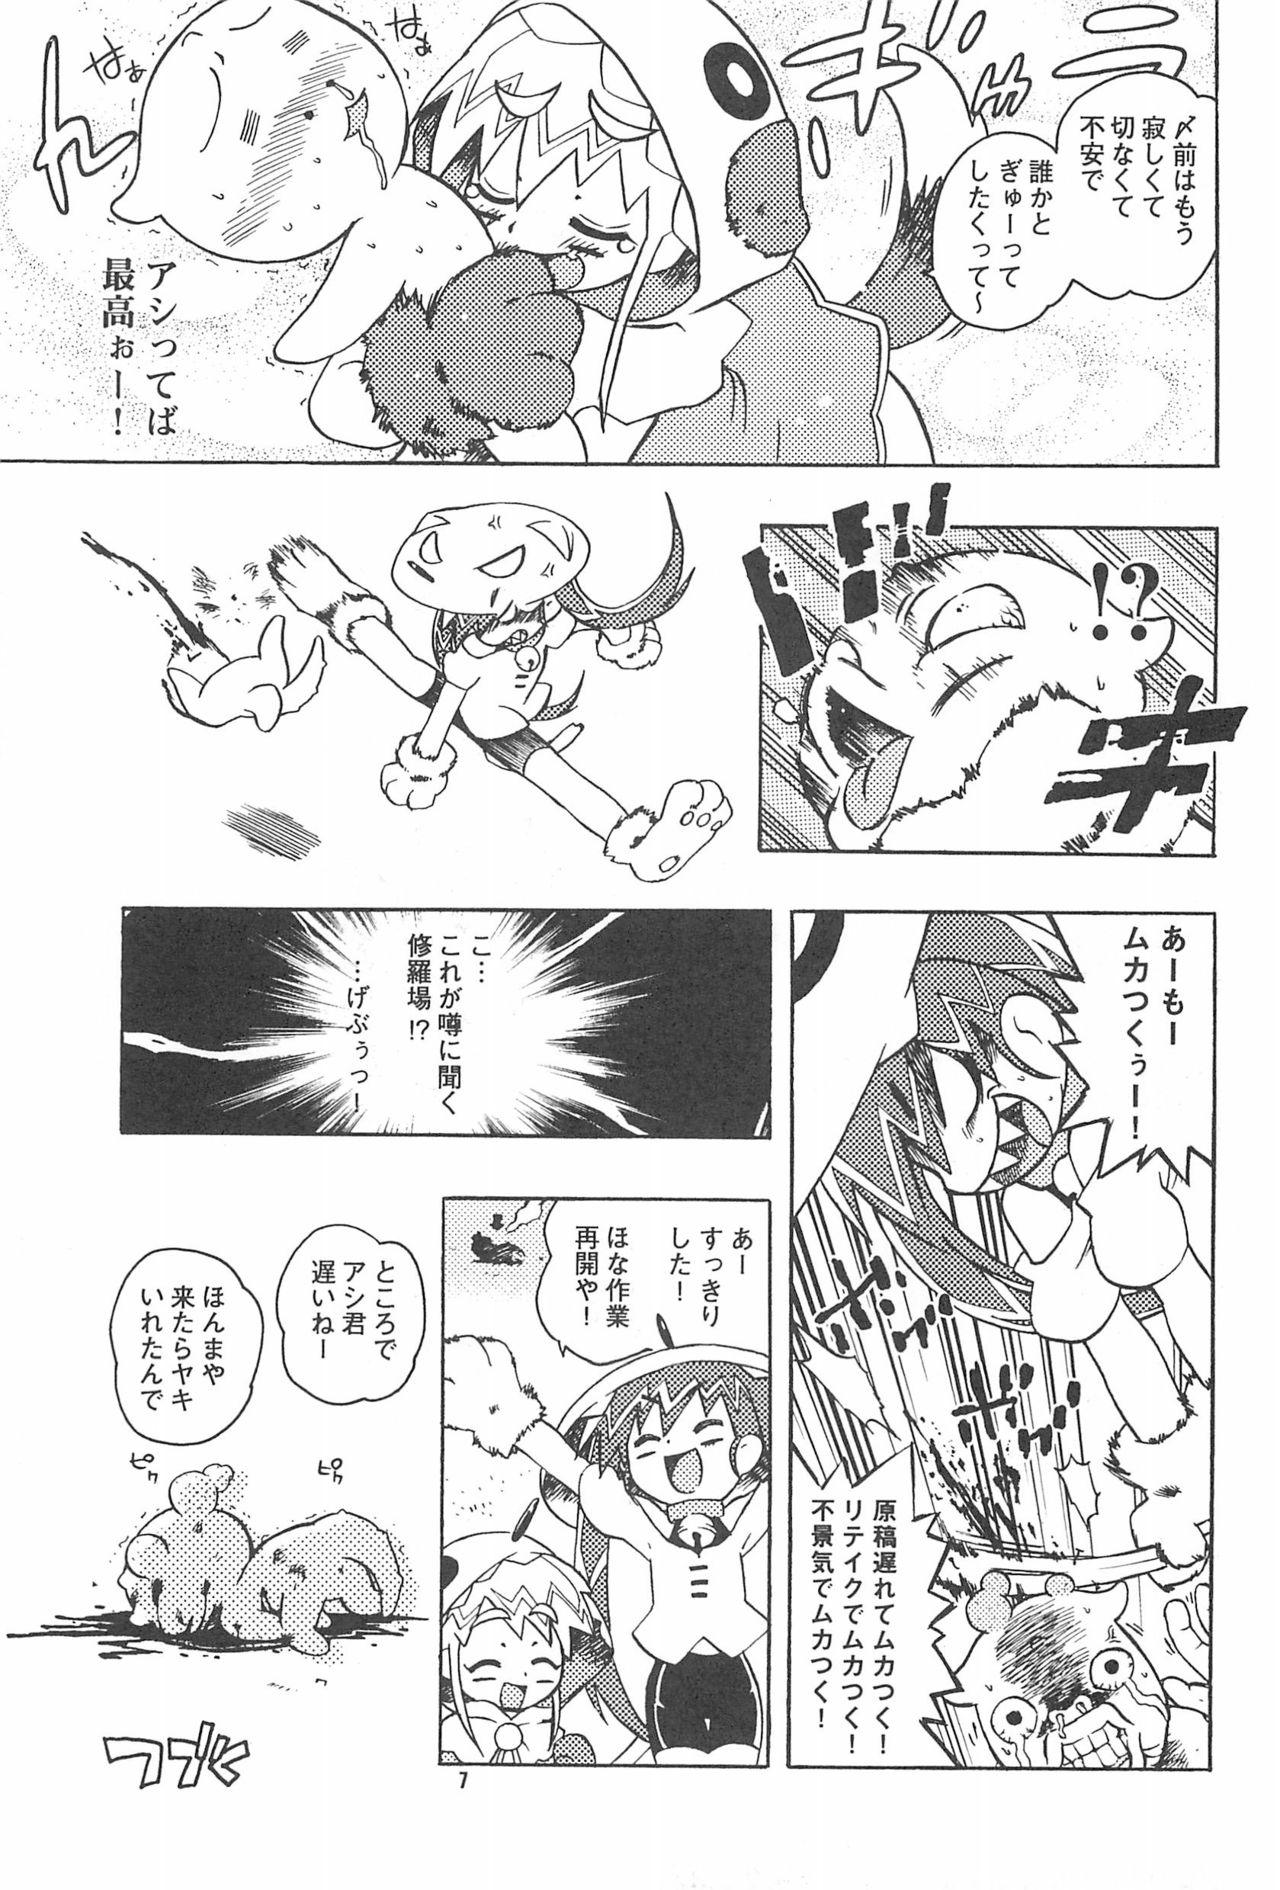 Joven Rokusai+2 Masterbation - Page 7